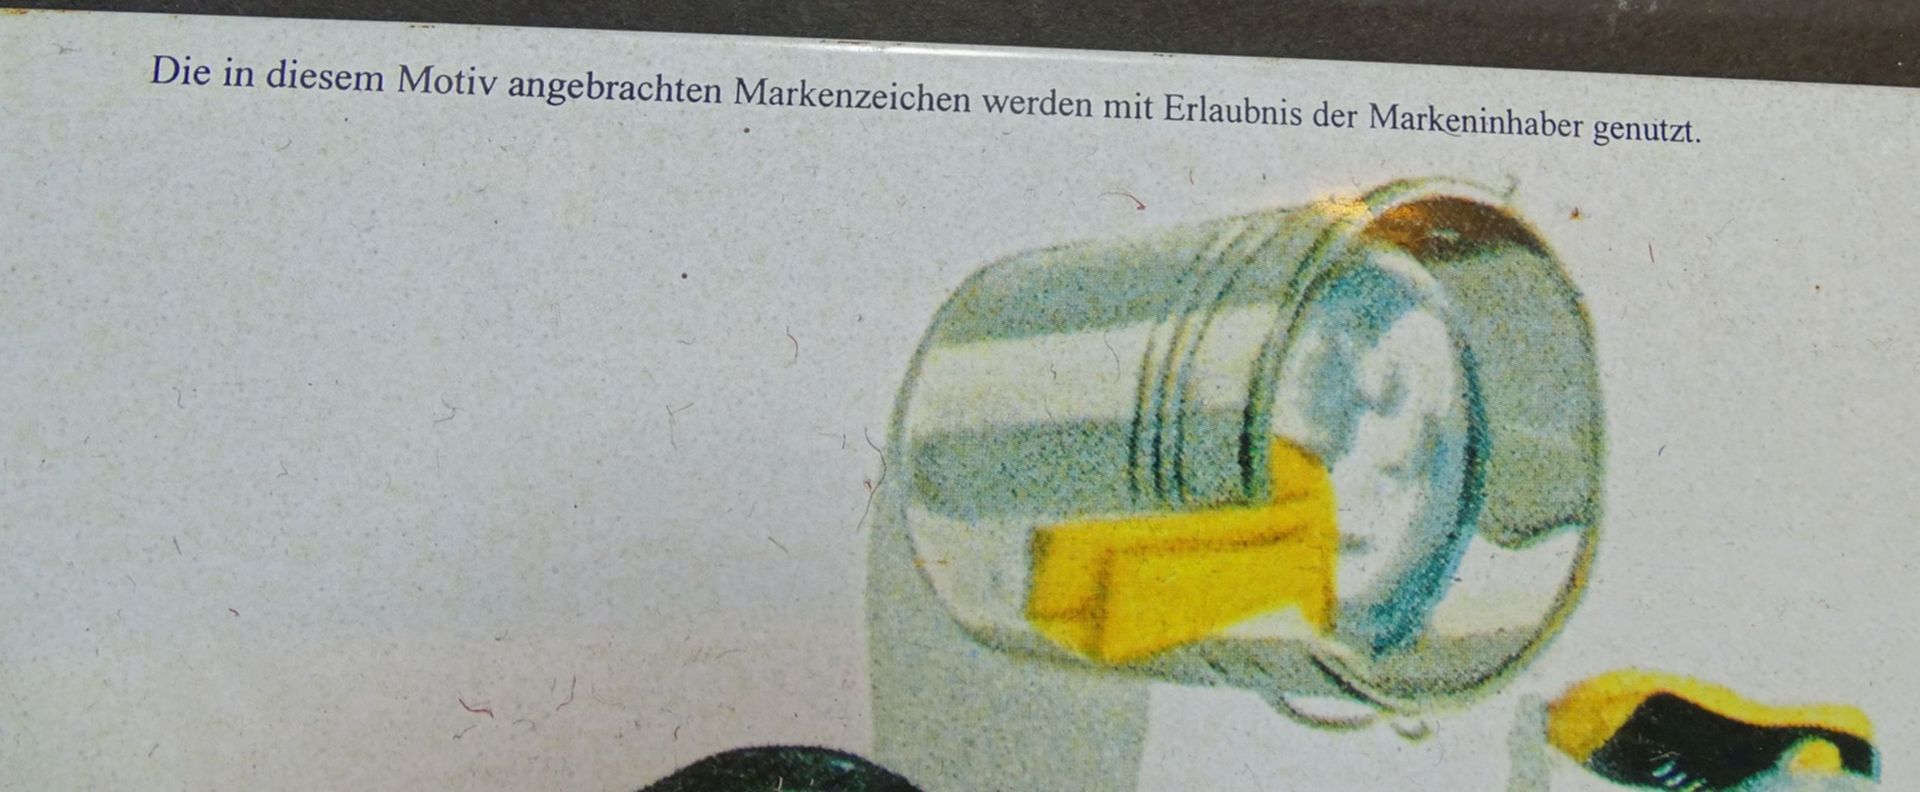 Blechsachild "VW-Er gehört zur Familie" 58x38 cm - Bild 4 aus 6